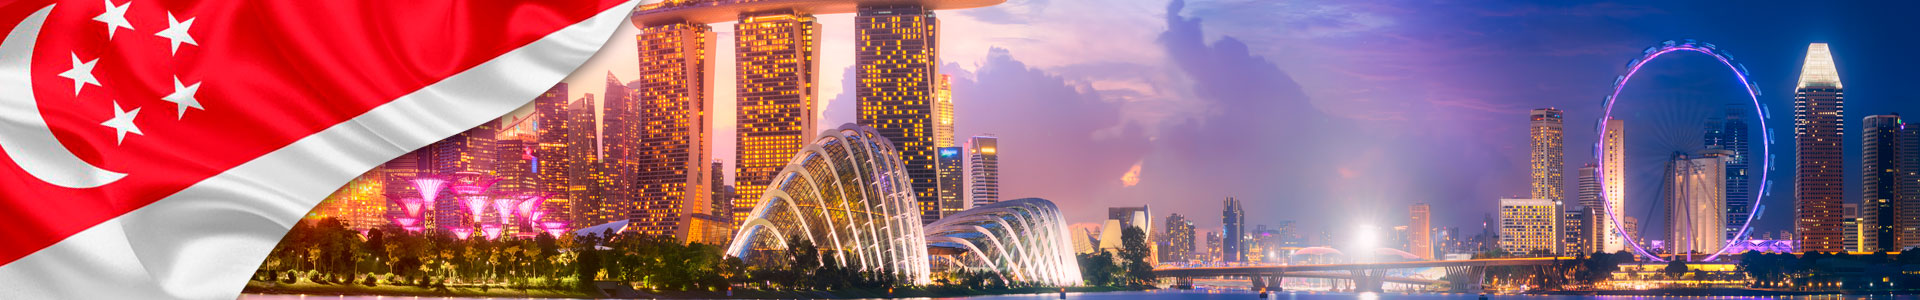 Bandera de Singapur con panorama del horizonte de Singapur en la bahía de negocios